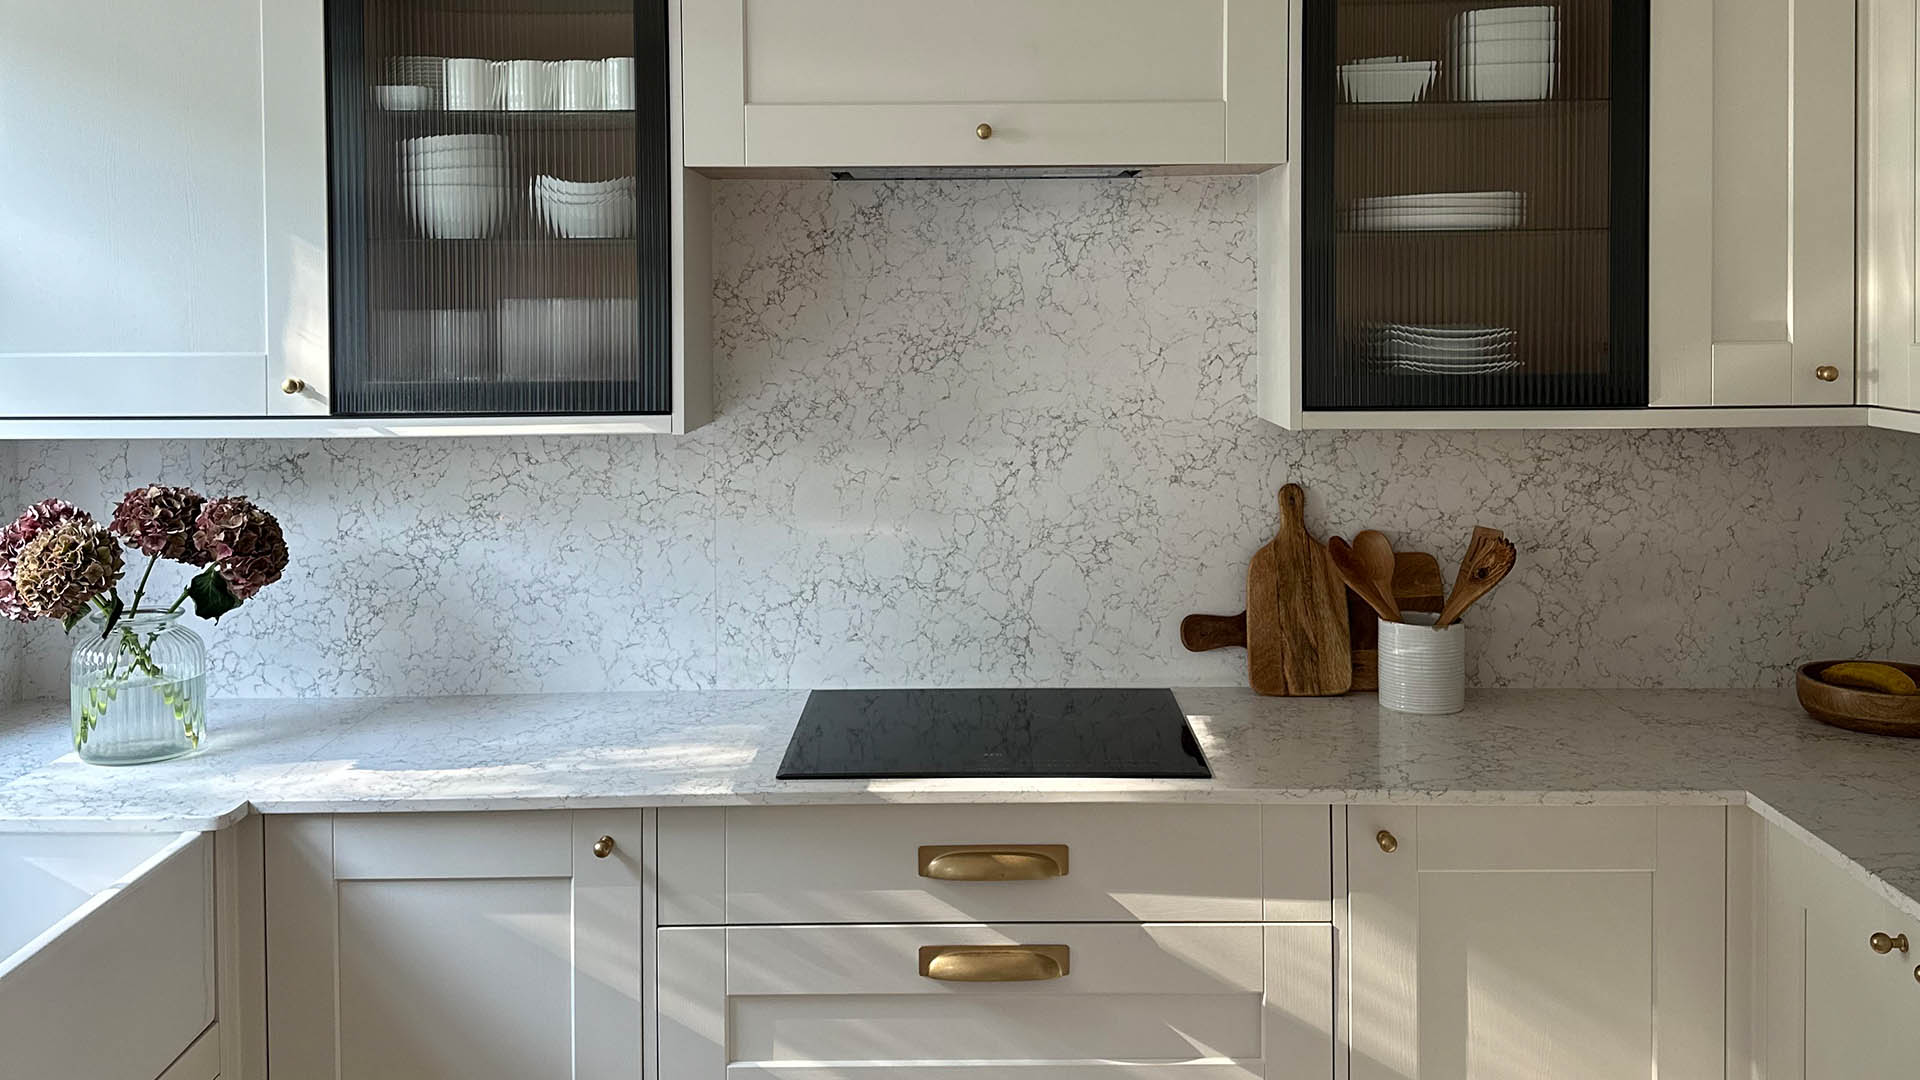 Caesarstone Arabetto quartz worktop and splashback in transitional kitchen